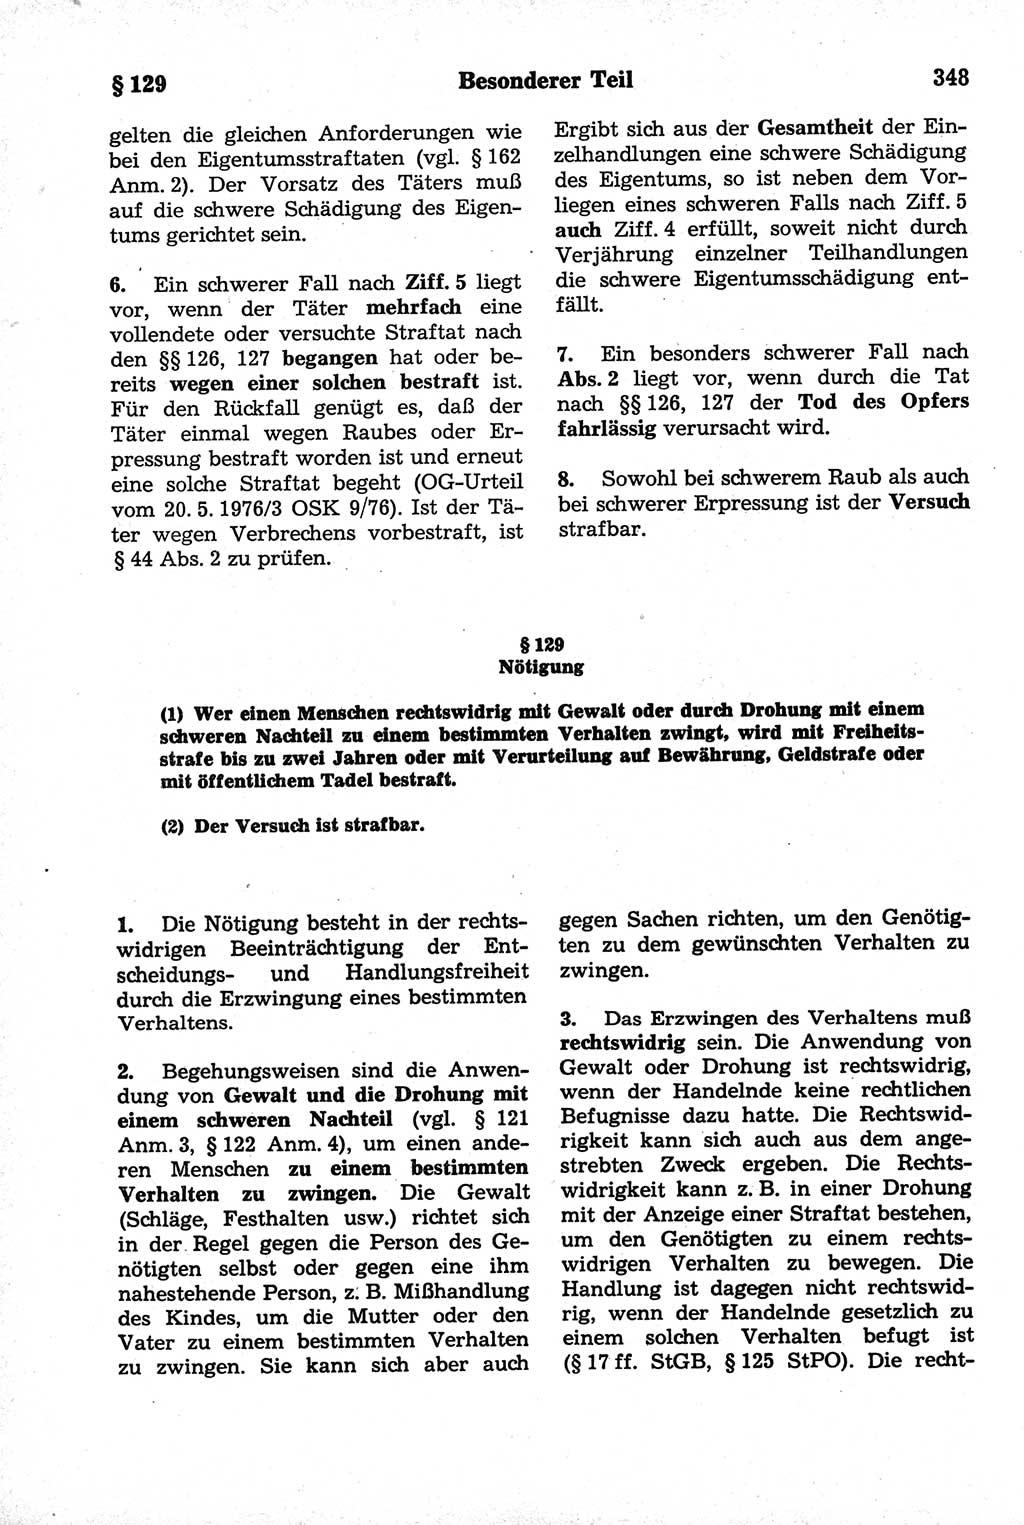 Strafrecht der Deutschen Demokratischen Republik (DDR), Kommentar zum Strafgesetzbuch (StGB) 1981, Seite 348 (Strafr. DDR Komm. StGB 1981, S. 348)